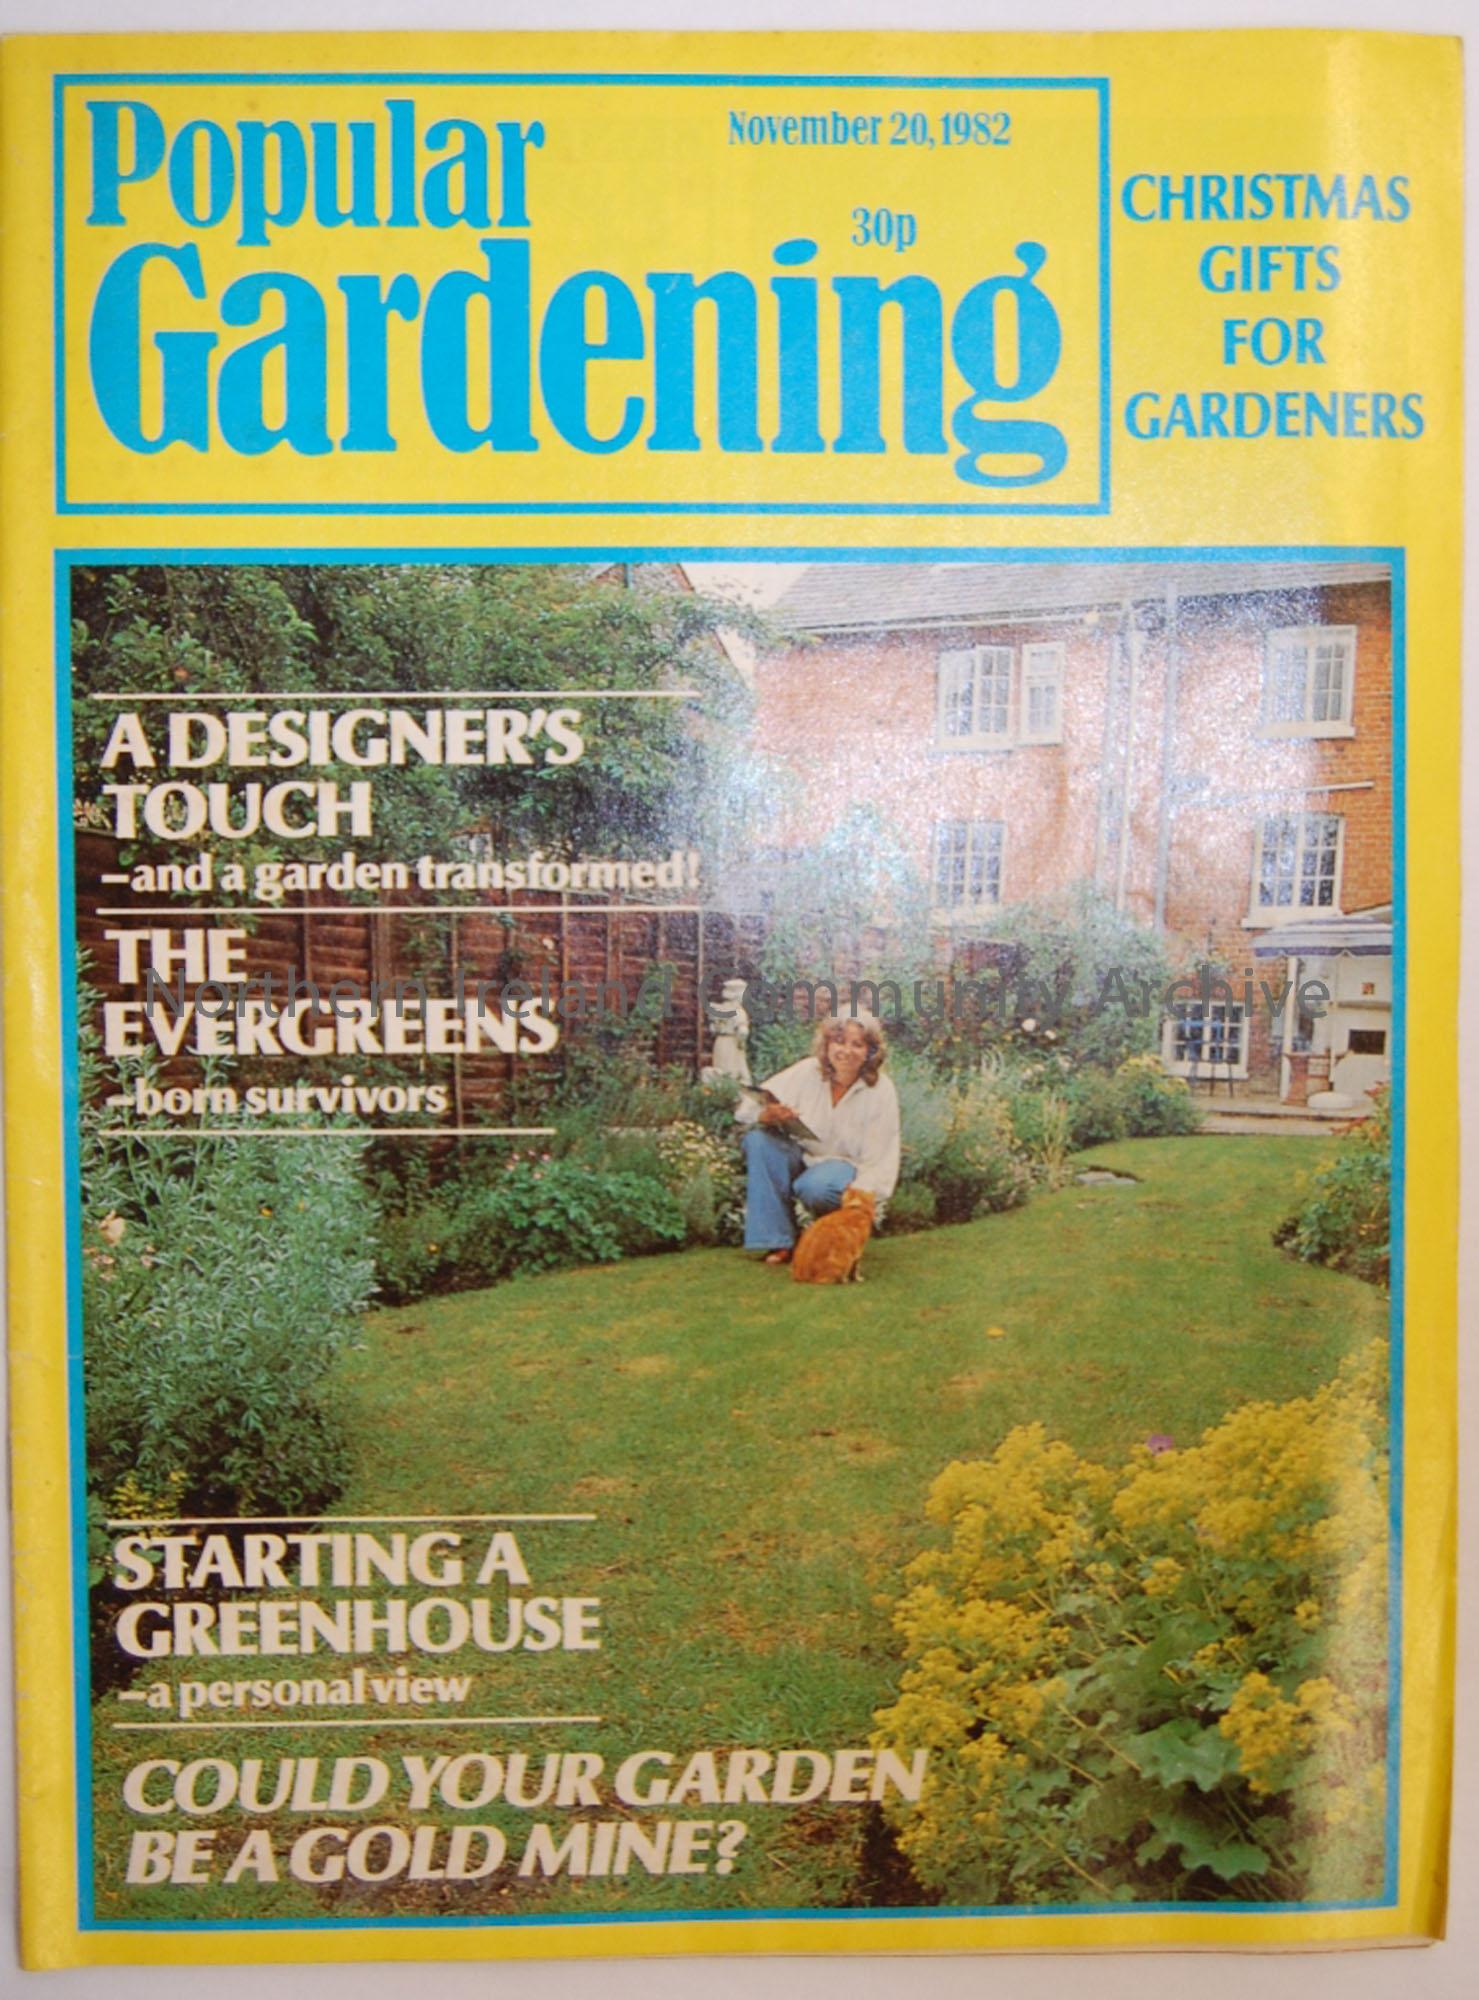 Popular Gardening. November 20, 1982. Price 30p.